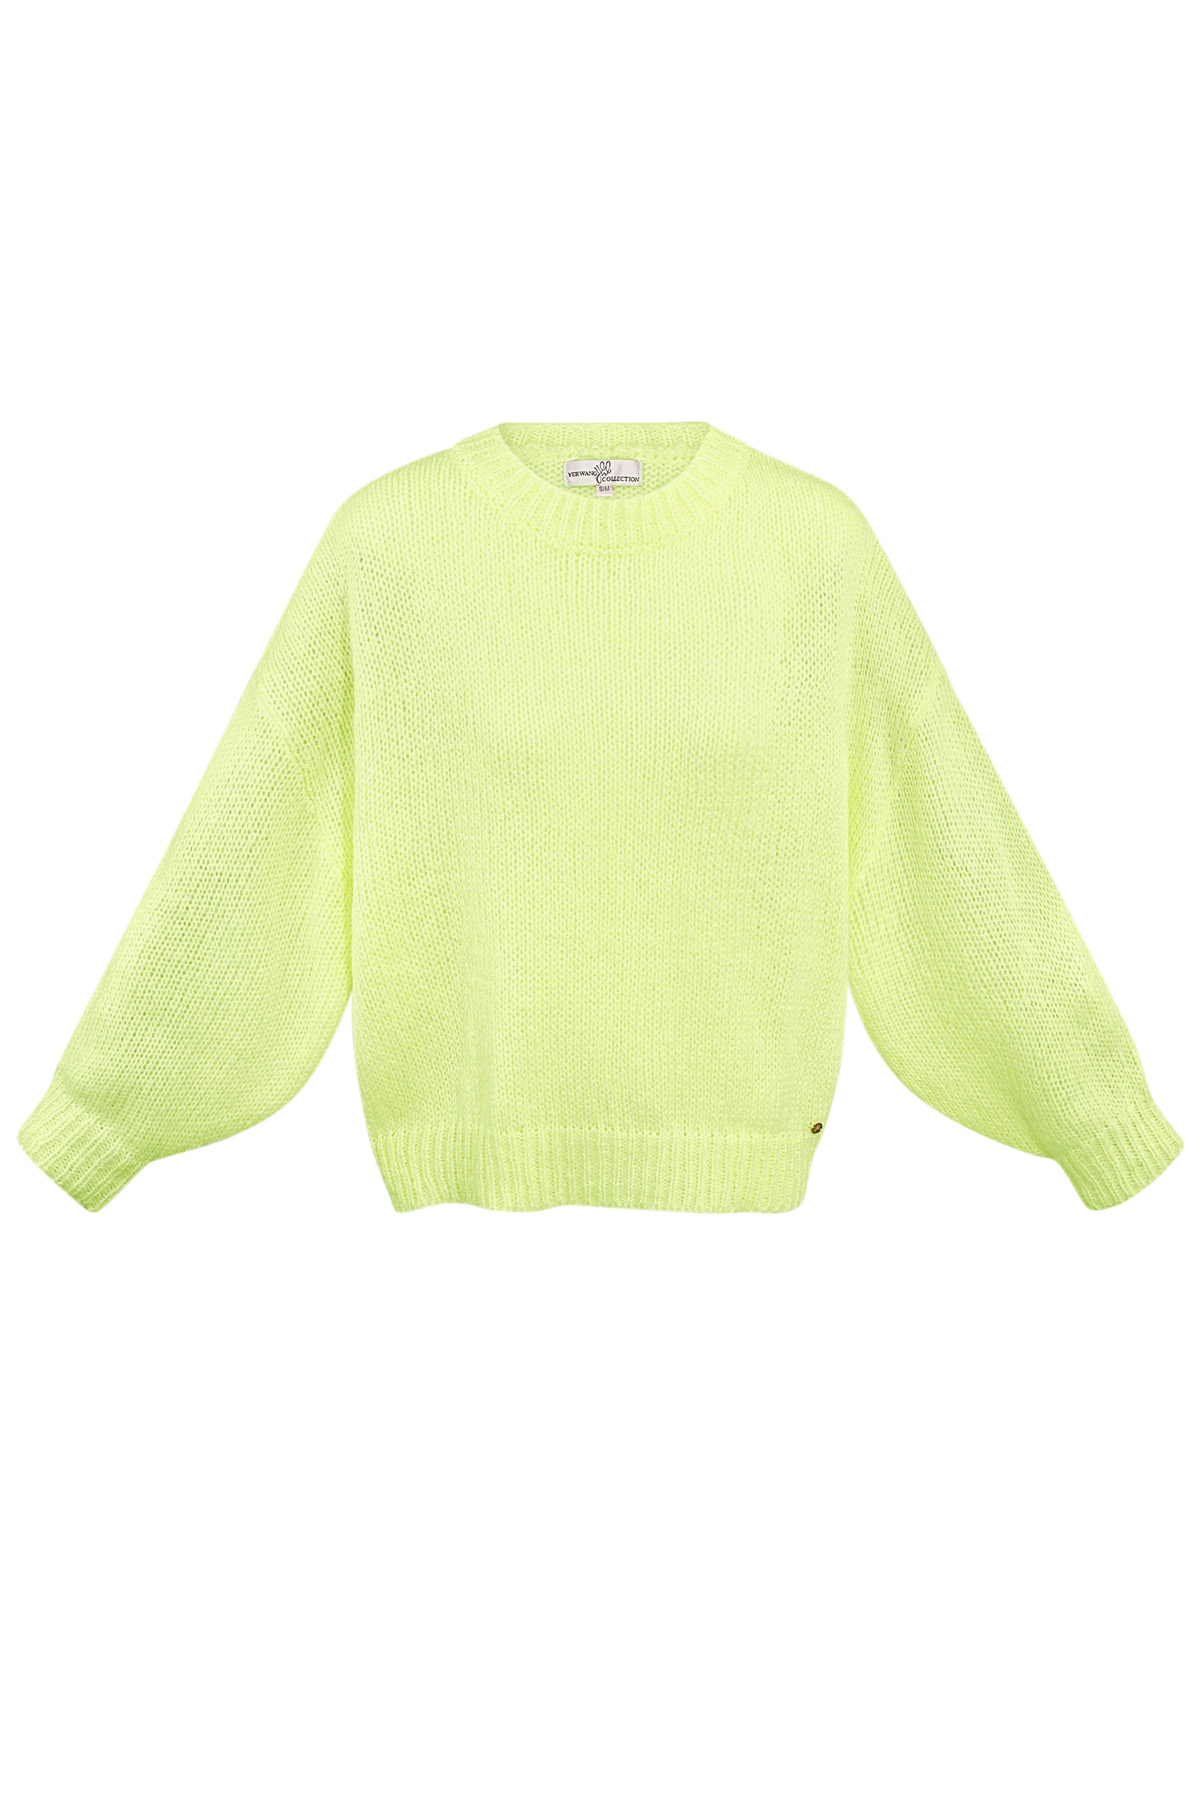 Pullover gemütlich - gelb h5 